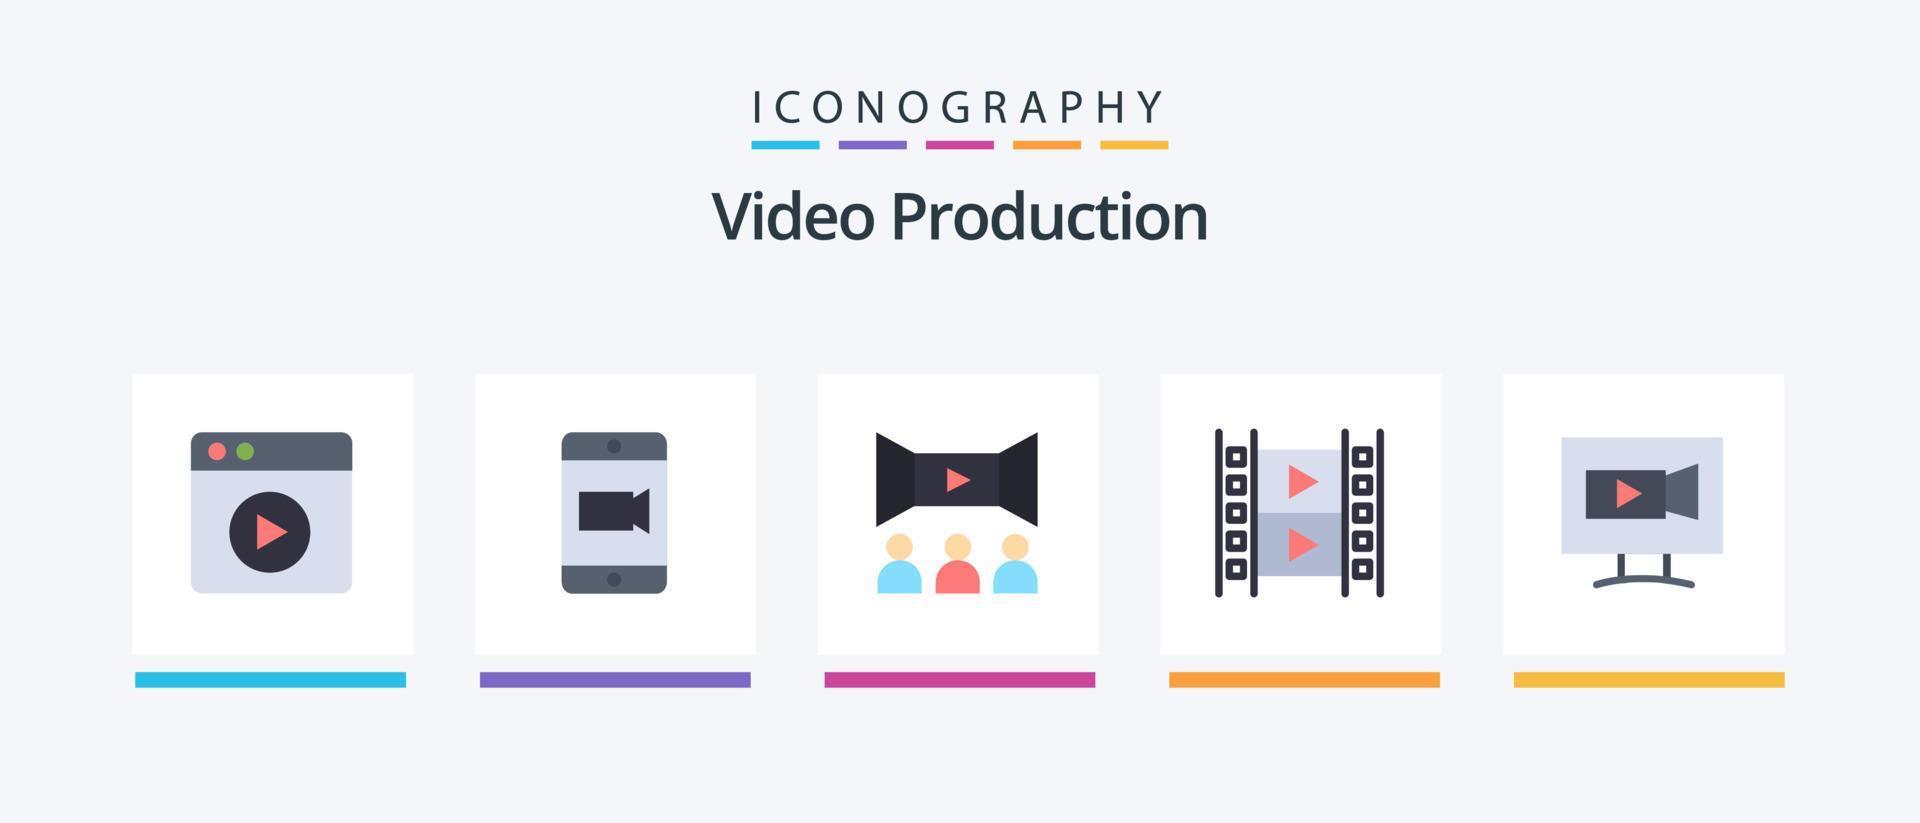 paquete de iconos planos de producción de video 5 que incluye video. monitor. película. multimedia. medios de comunicación. diseño de iconos creativos vector